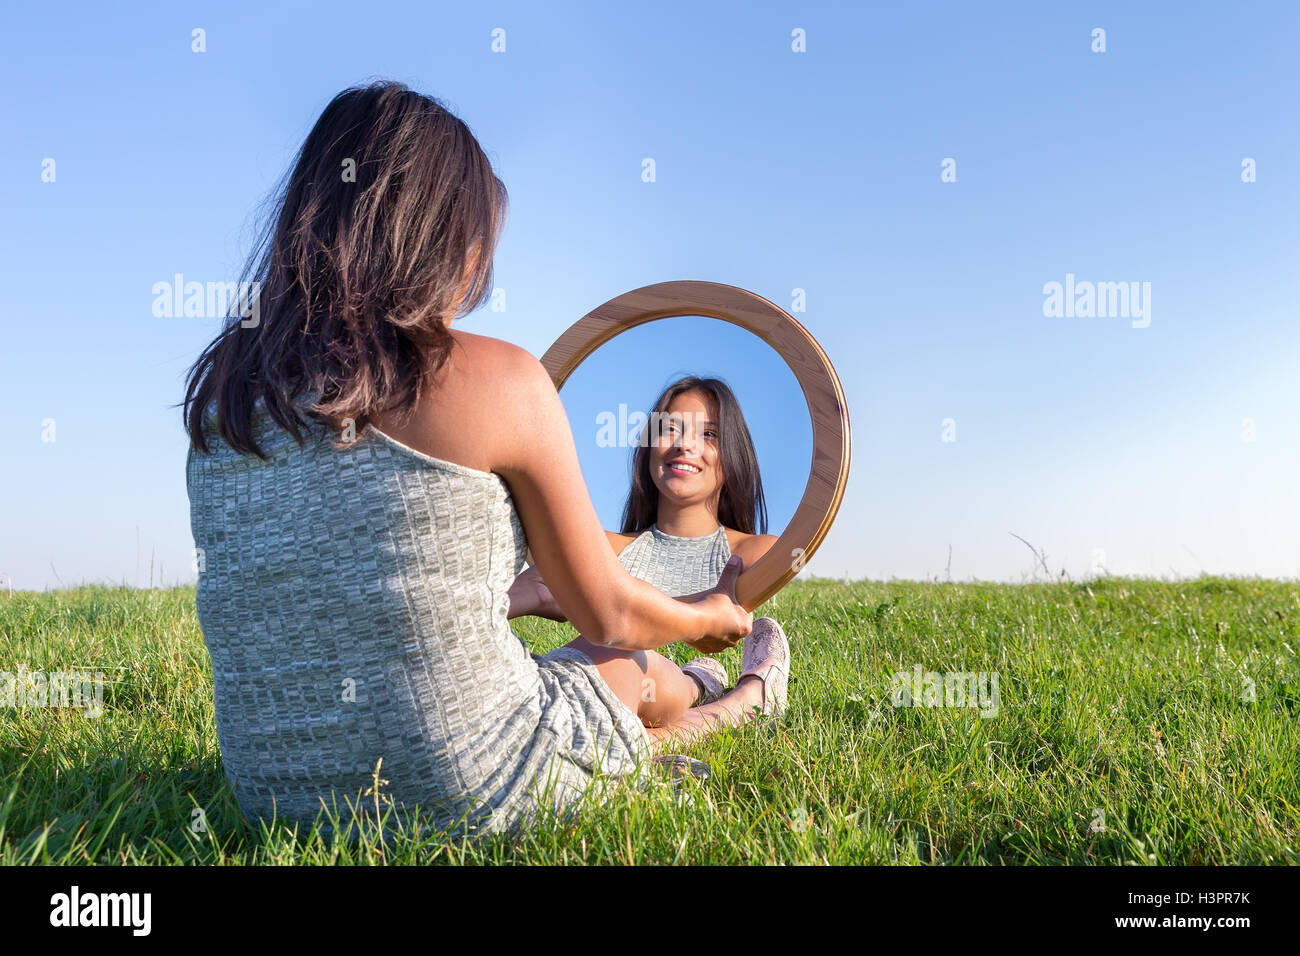 Frau sitzt auf dem Rasen Blick auf ihr Spiegelbild Stockfoto